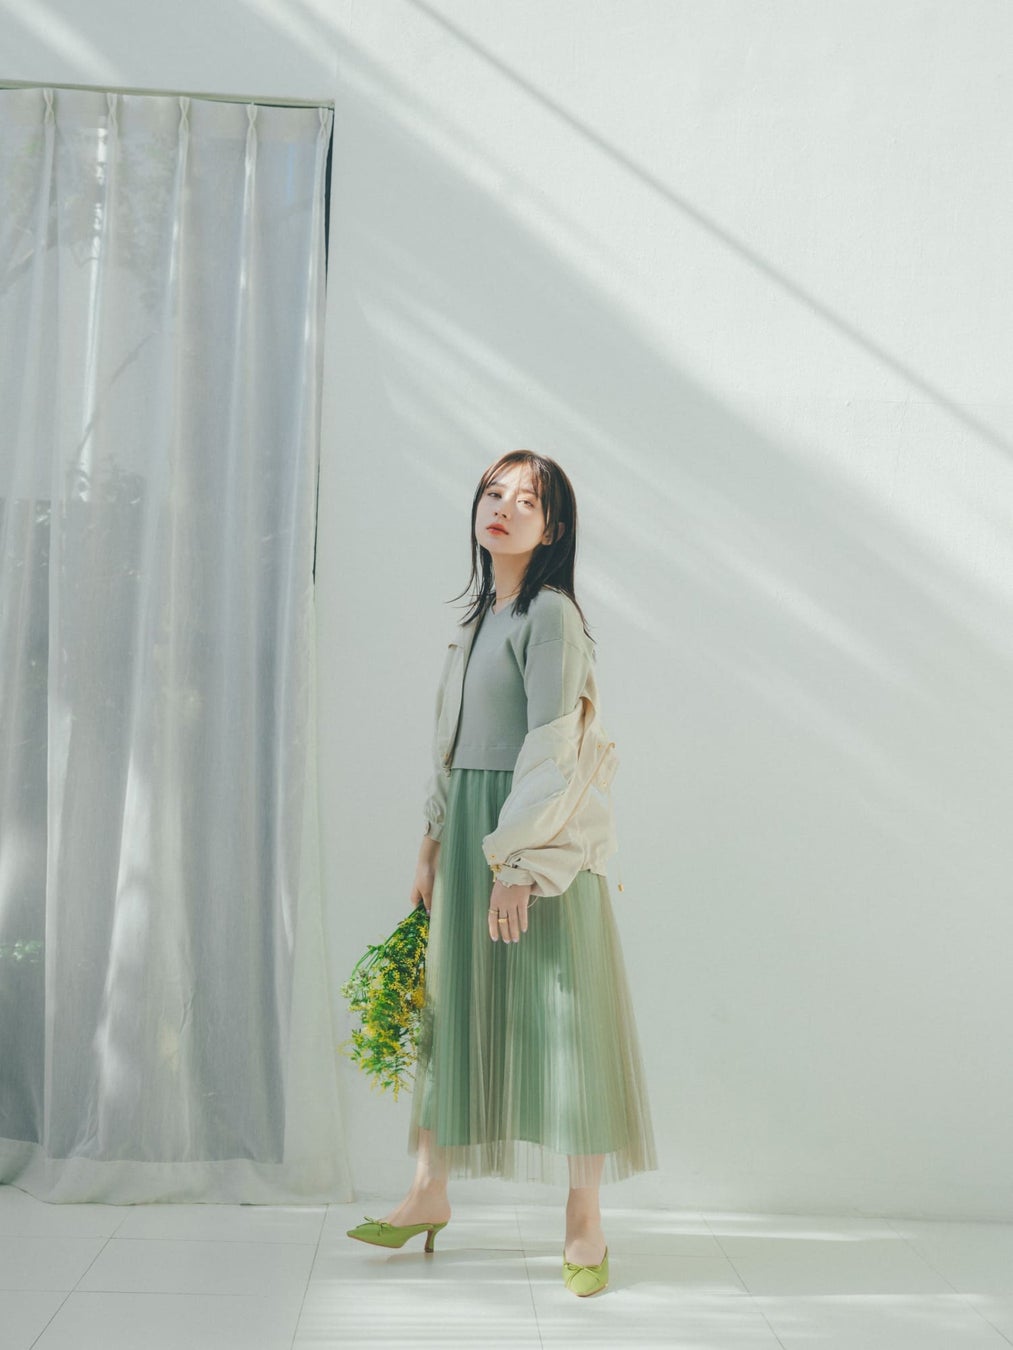 小柄女性向けブランド「COHINA」が、女優の畑芽育を起用した2024 Spring Collectionを発表